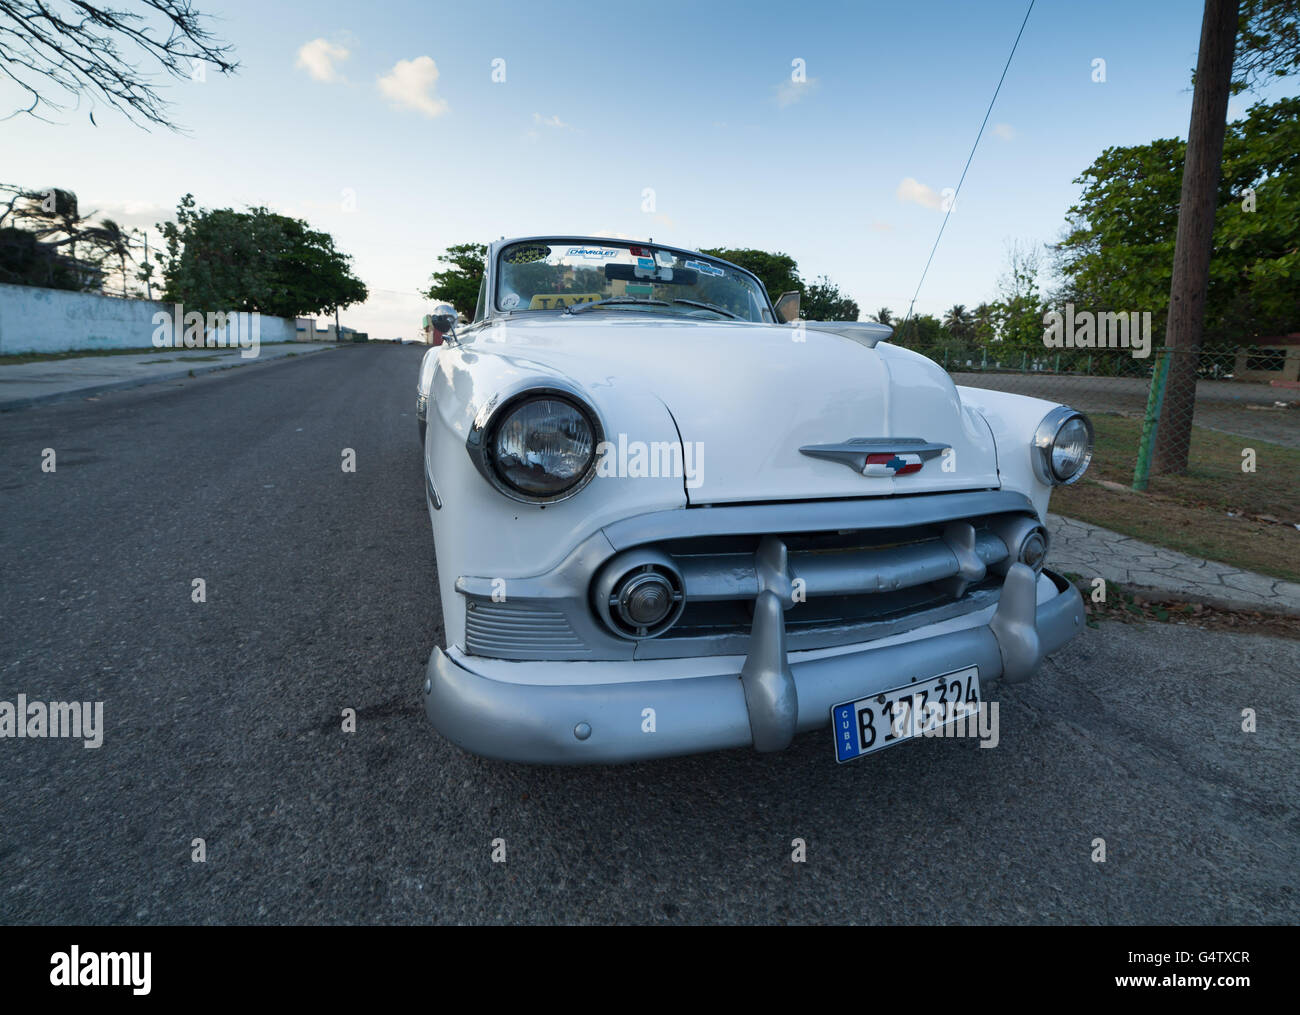 1930s-1959 antiguo American Chevrolet coupe coche se usan para taxi en Cuba. Foto de stock